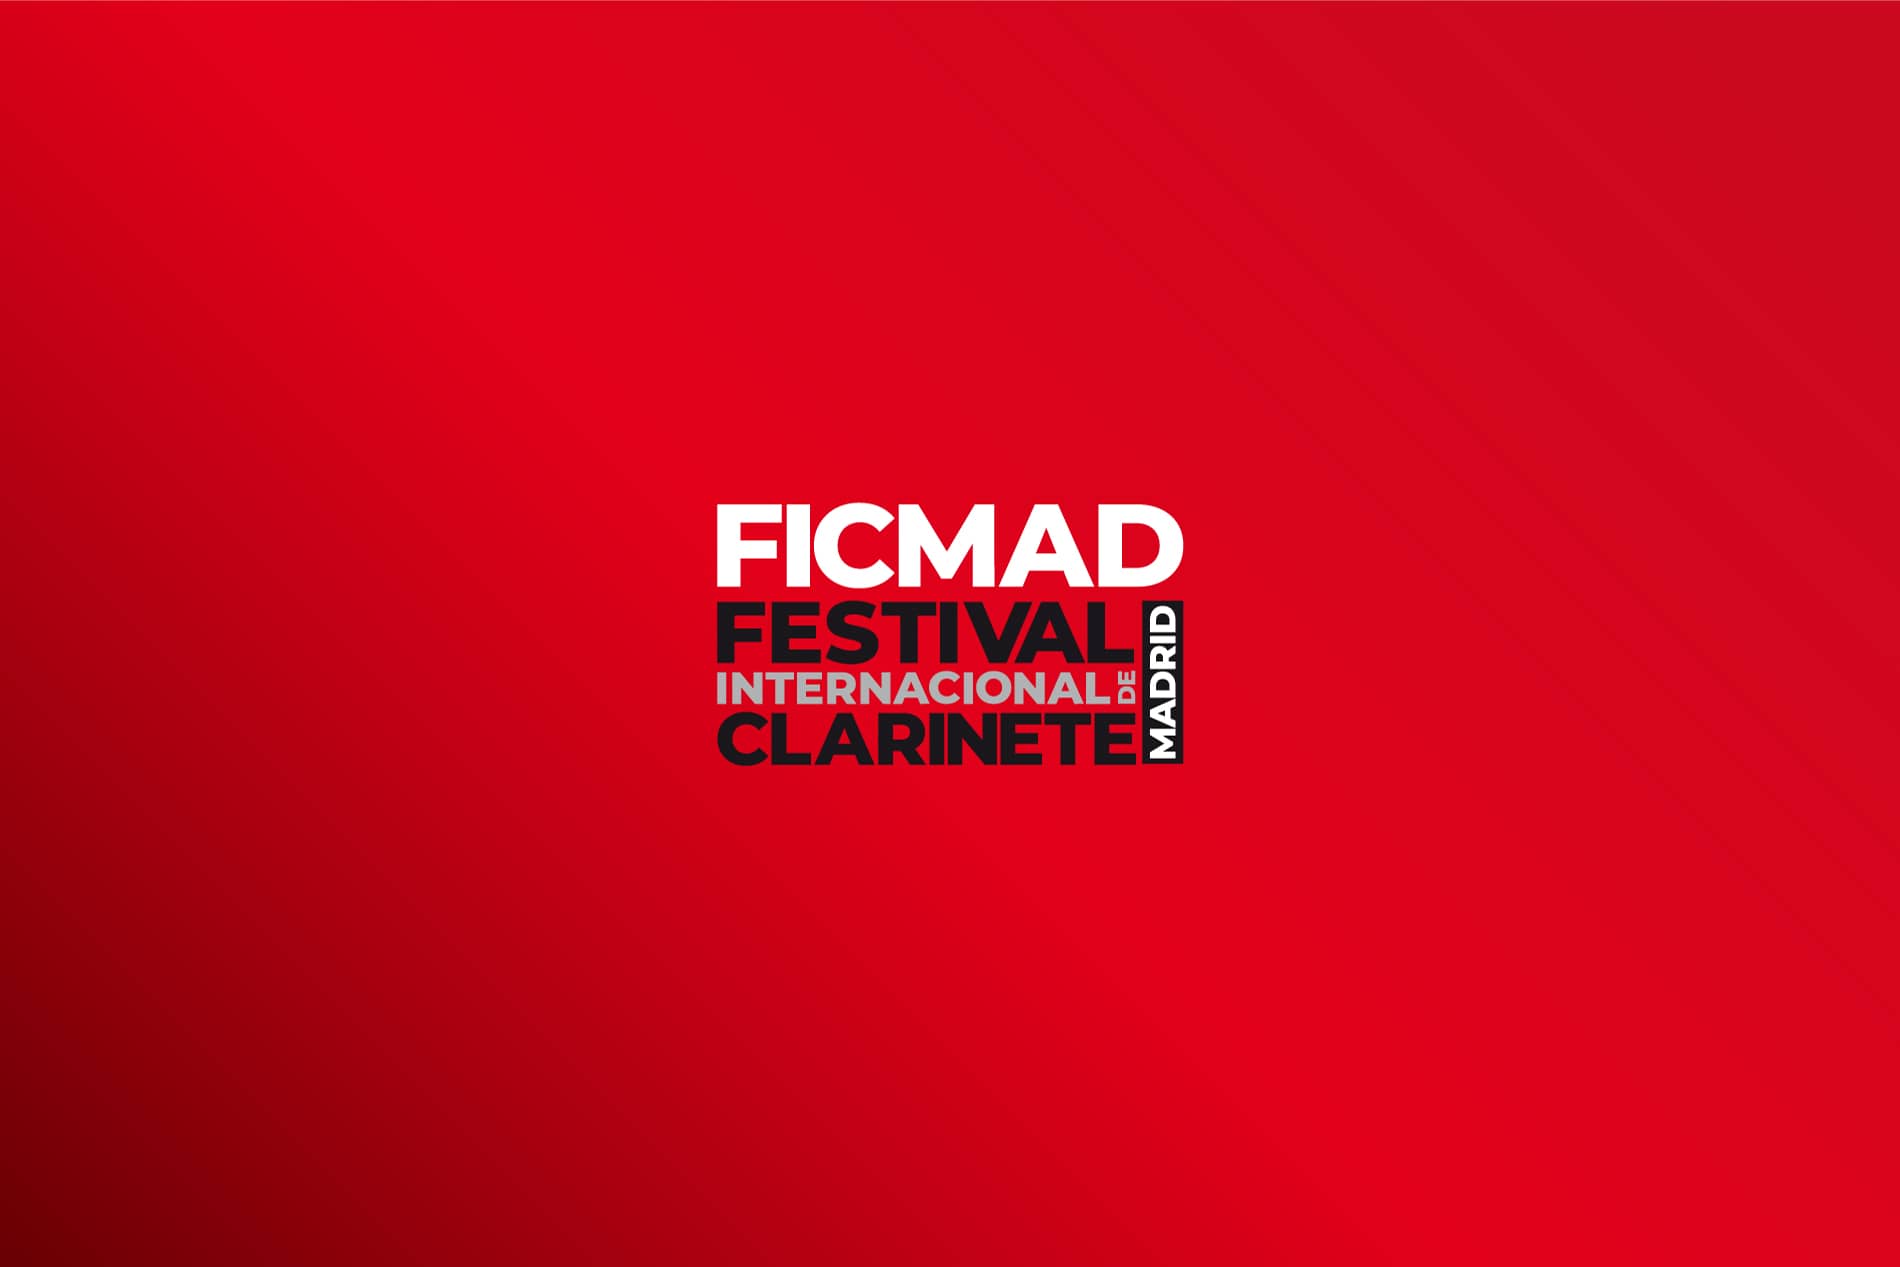 Logotipo FICMAD sobre fondo rojo branding por The Acctitude diseño web